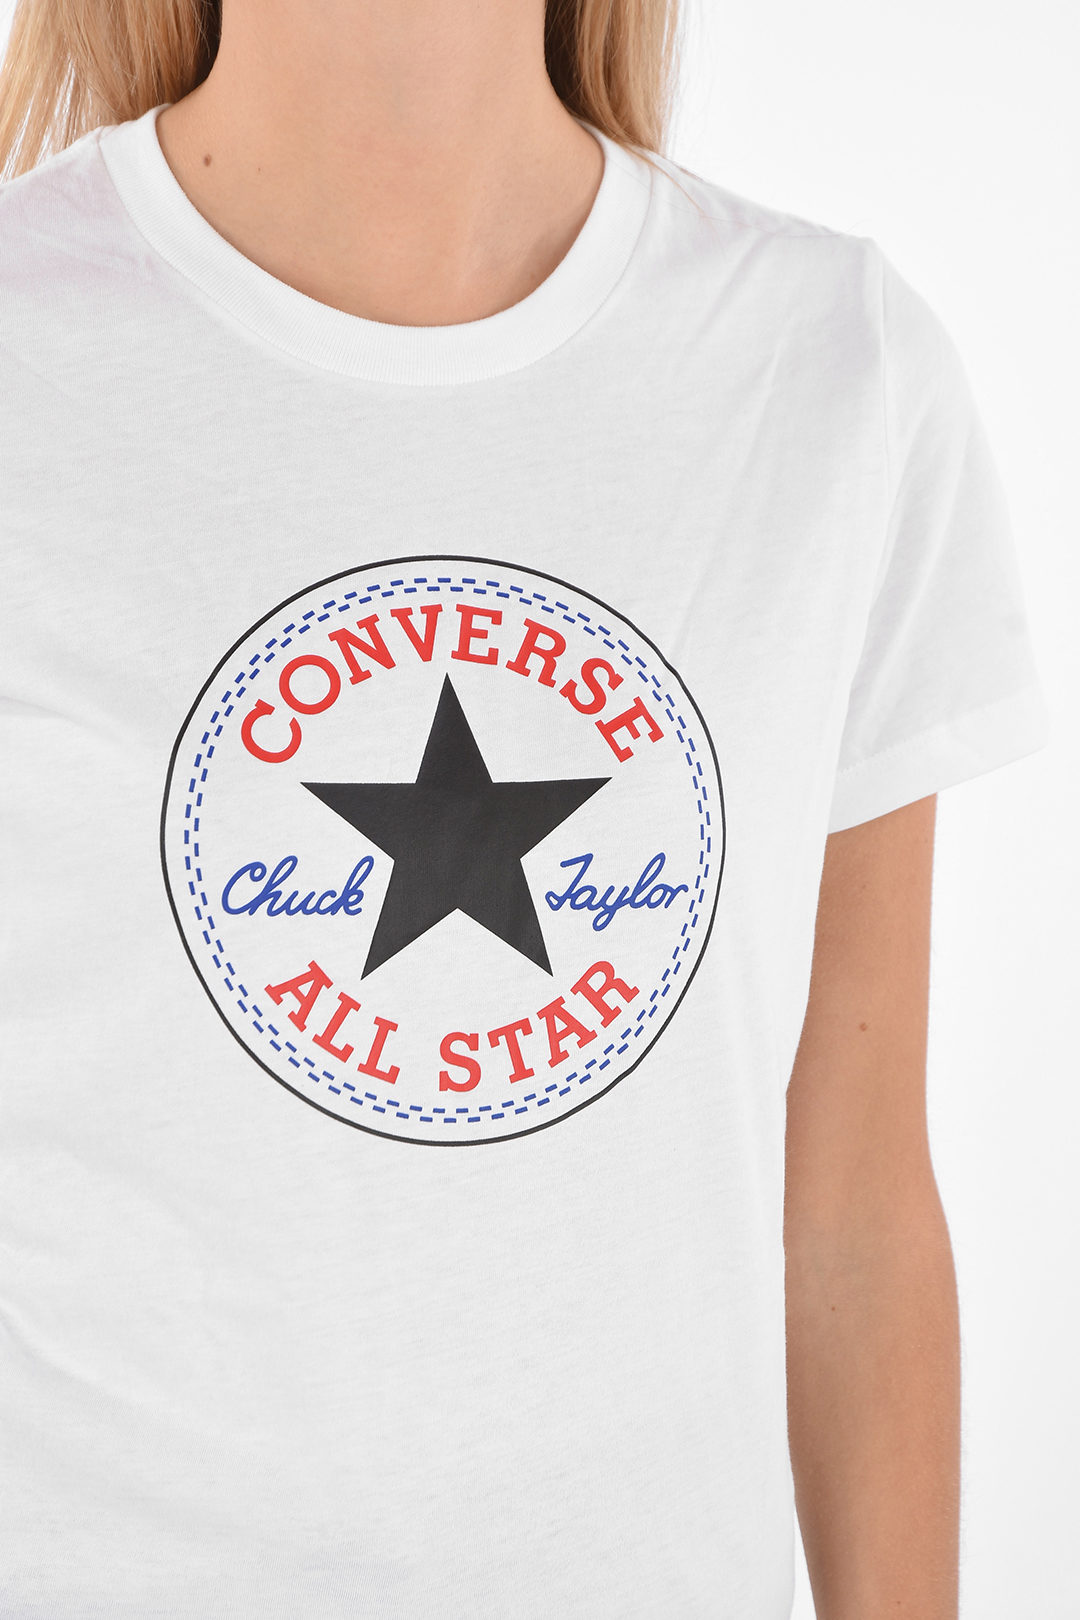 Arriba 98+ imagen all star converse shirt